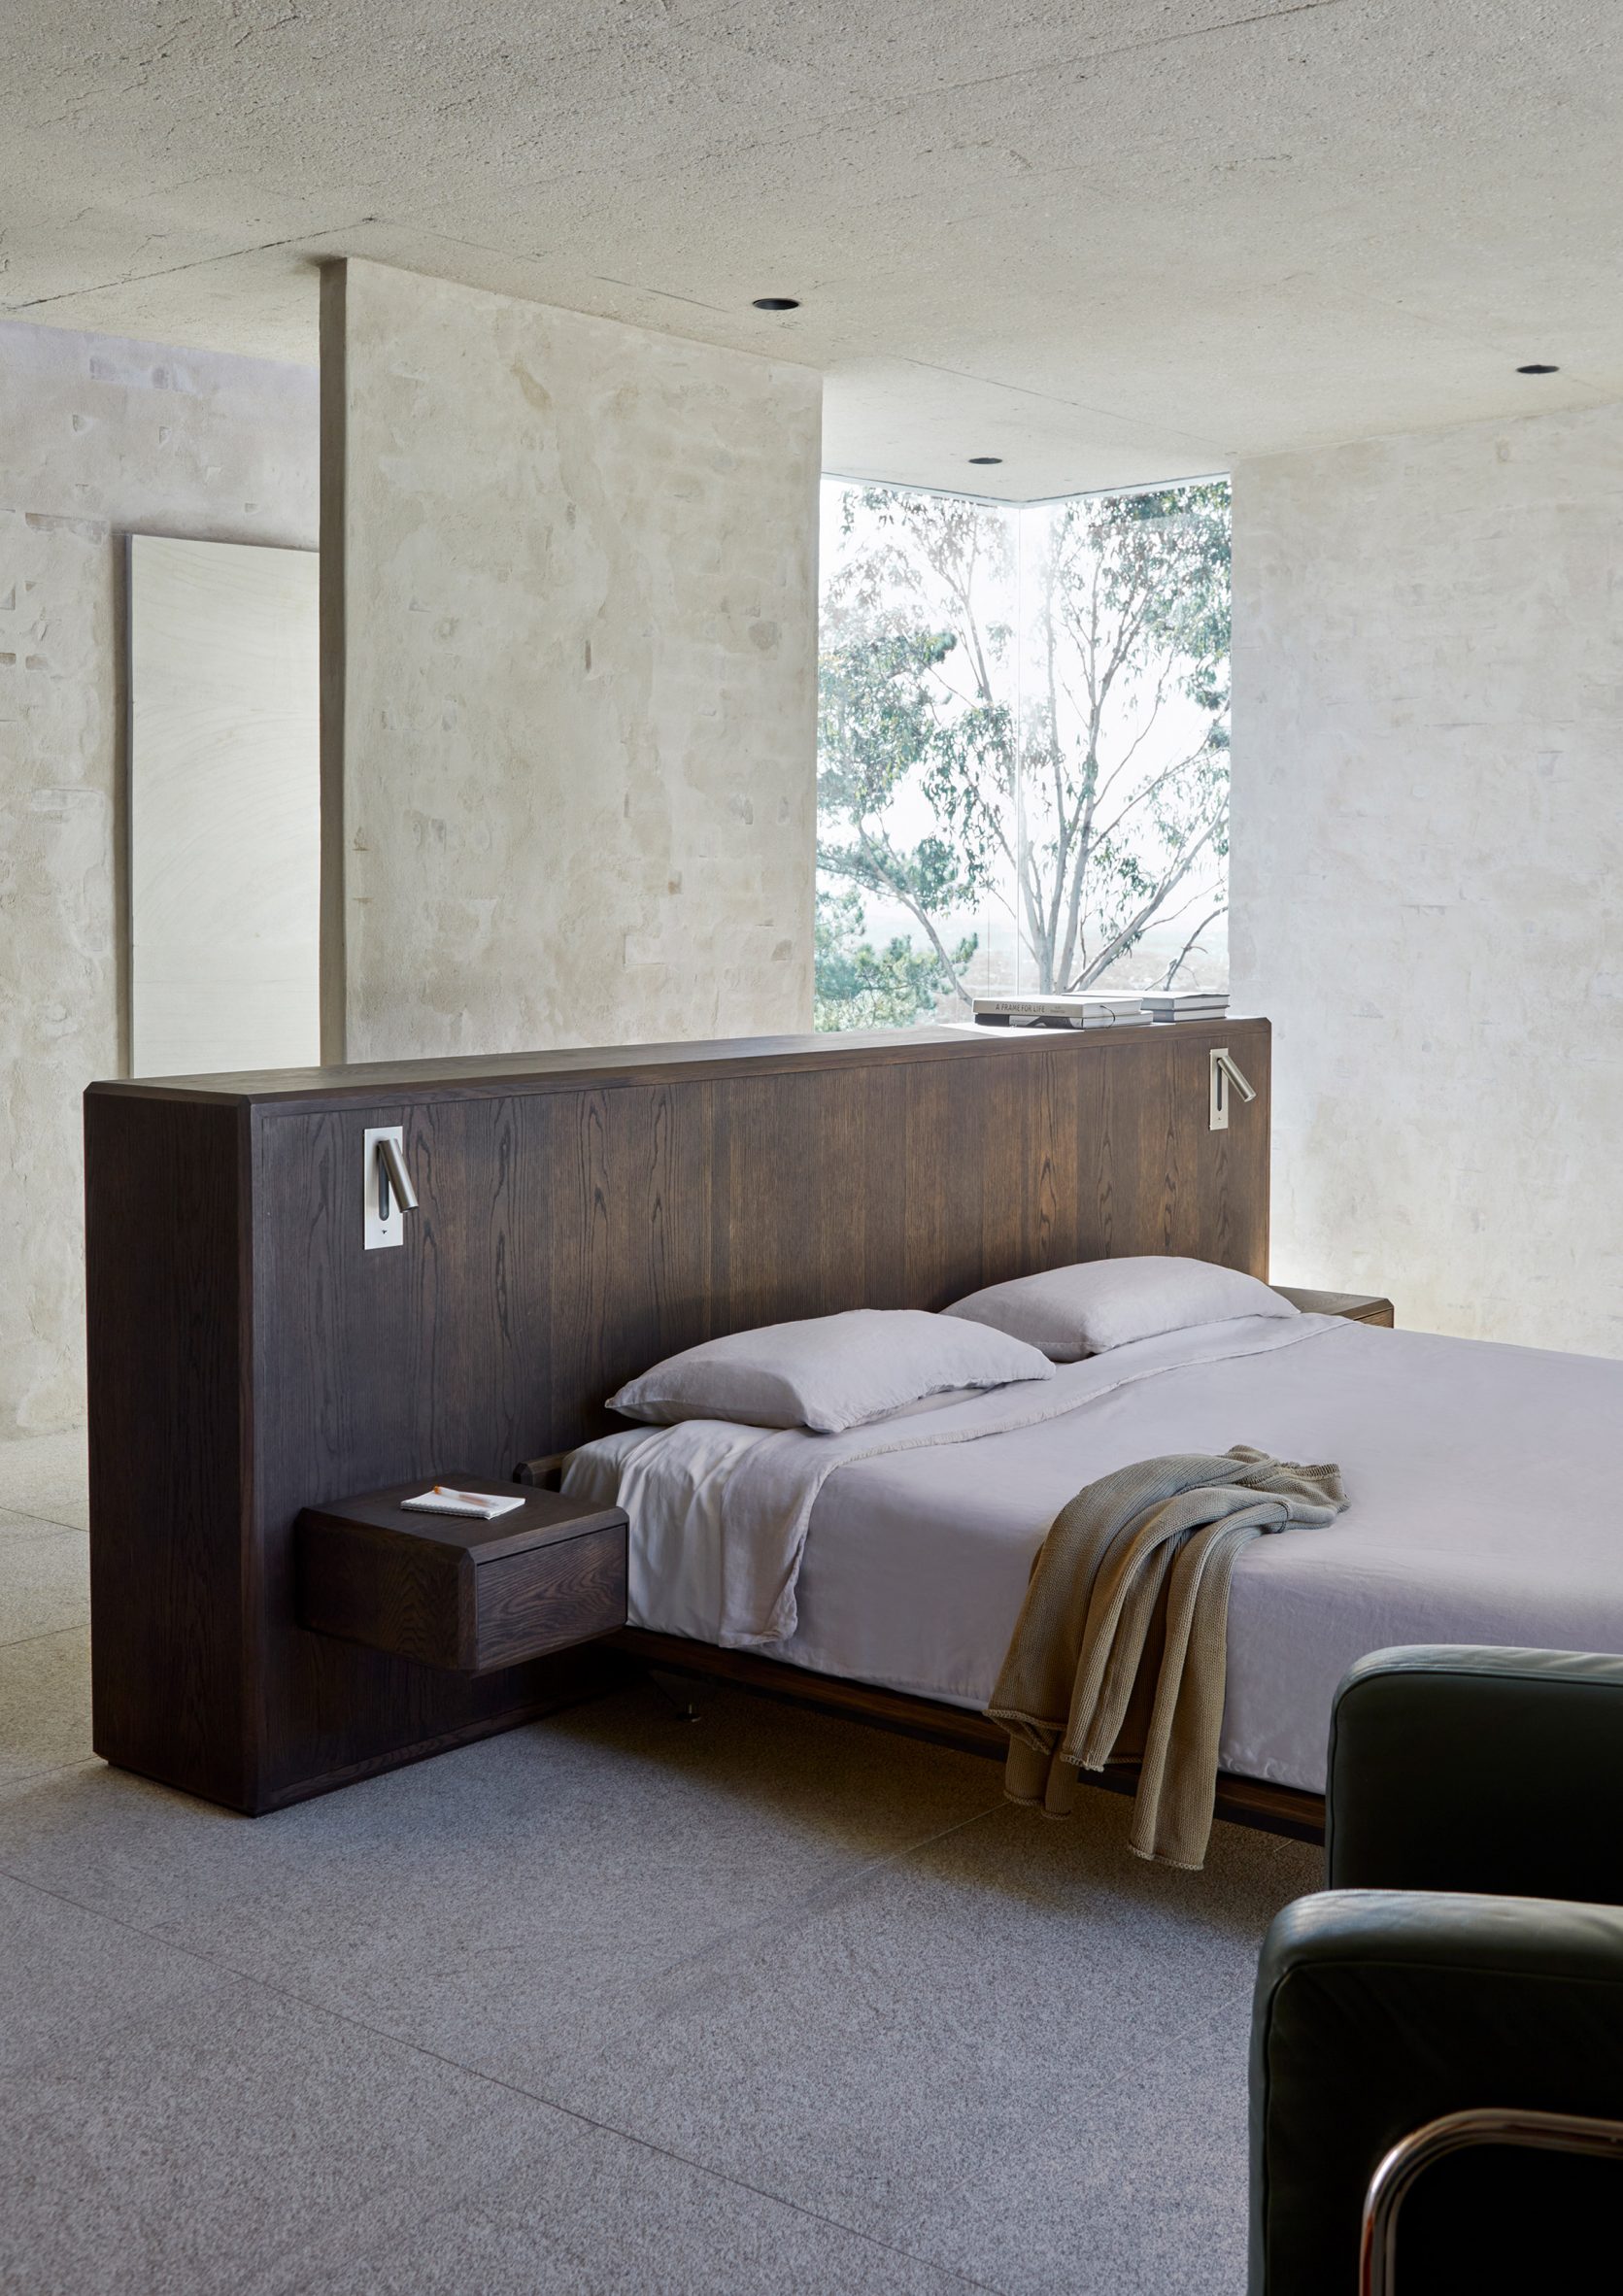 Bedroom in Mountain House by Chris van Niekerk